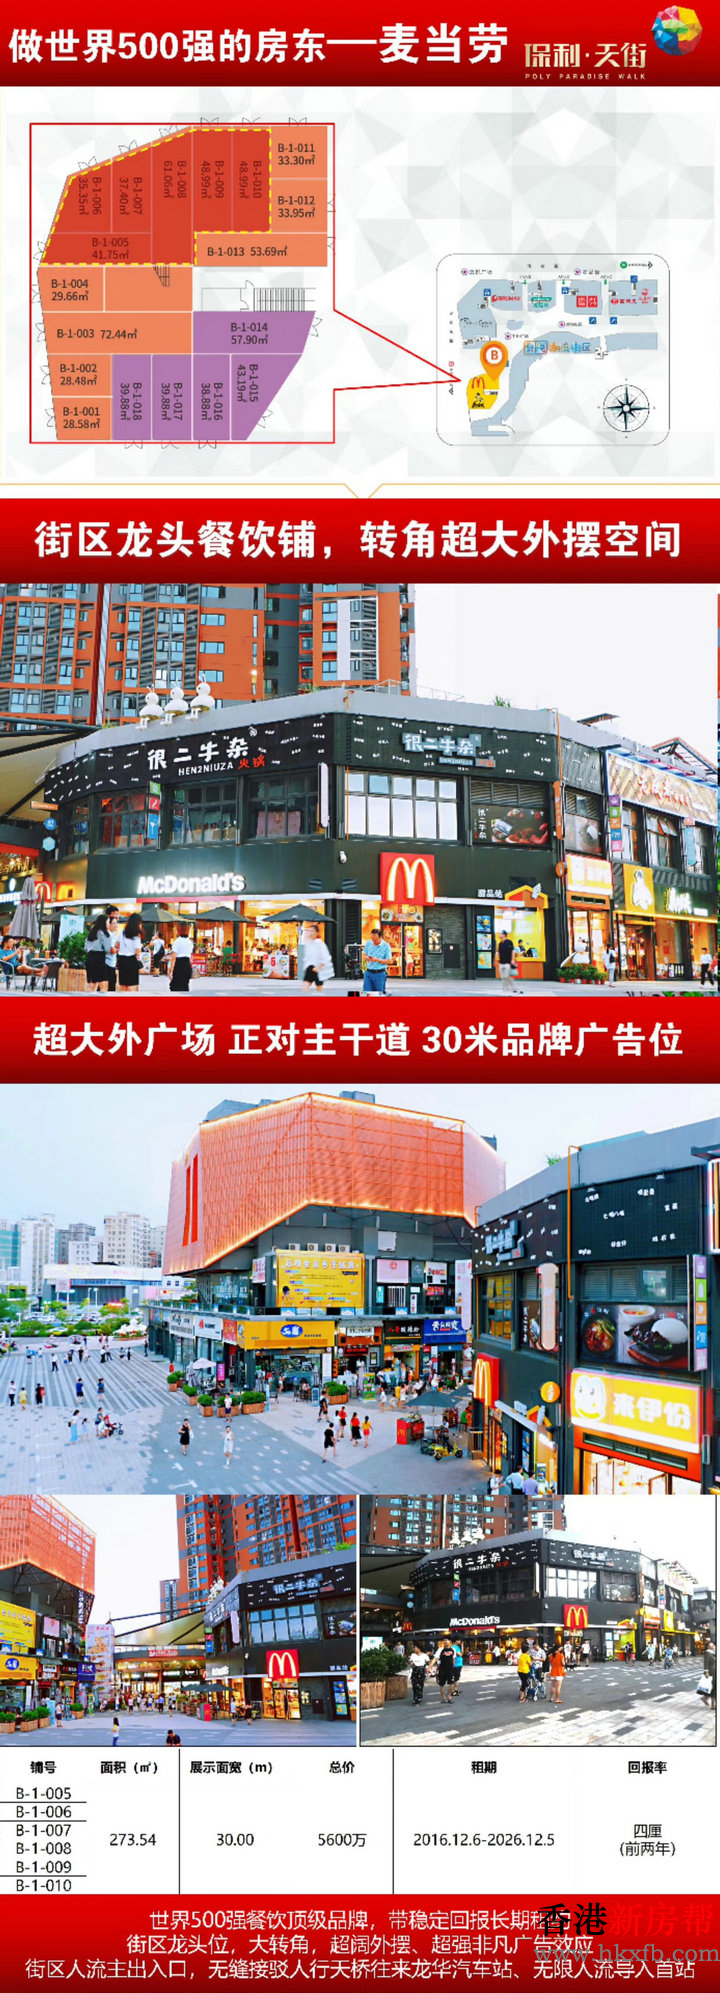 17 1 - 【保利天街】深圳龙华开放式购物广场步行街